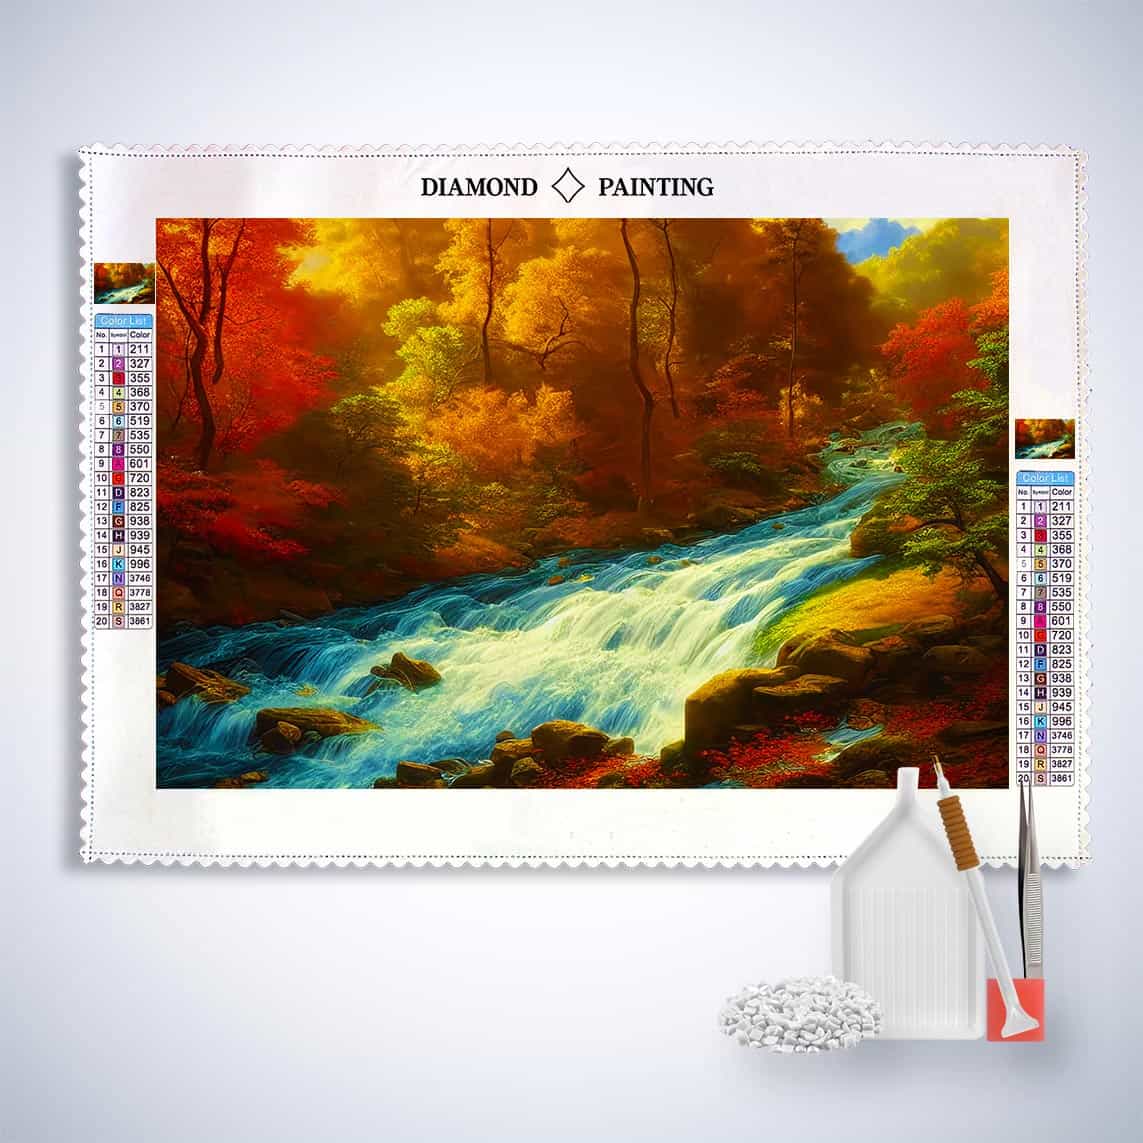 Diamond Painting - Reißender Fluss im Wald - gedruckt in Ultra-HD - Fluss, Horizontal, Landschaft, Wald